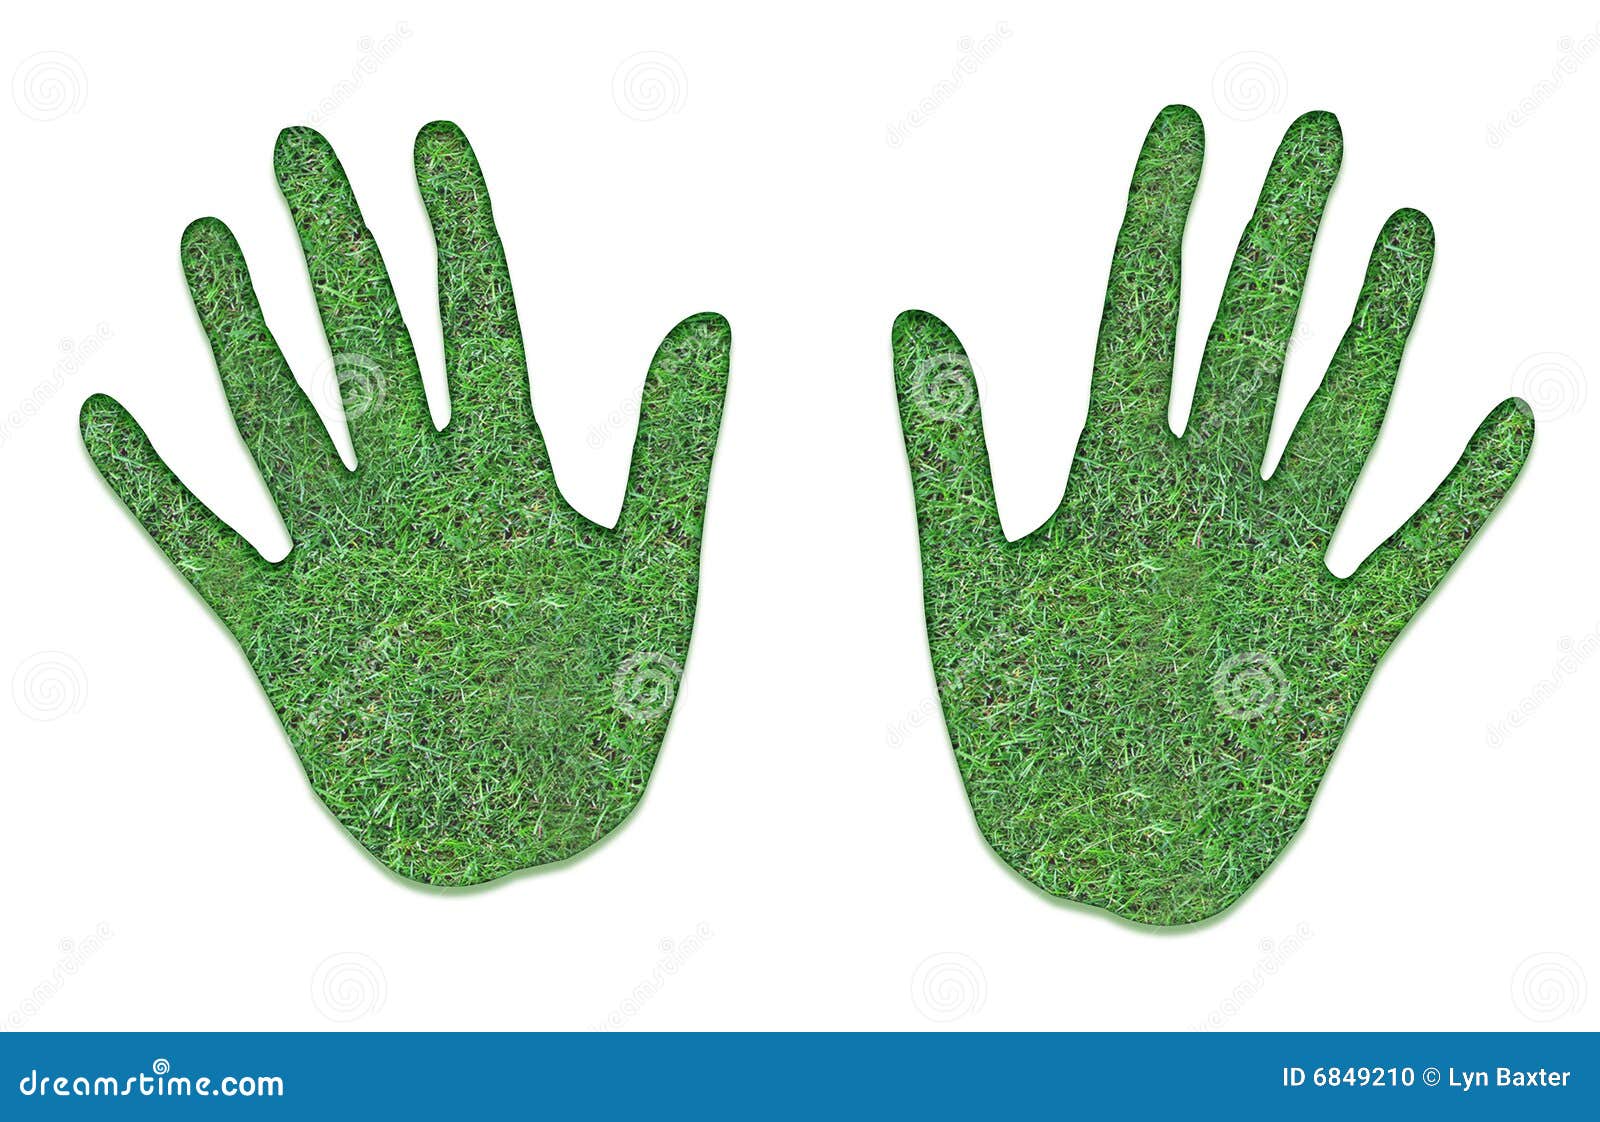 Правая рука зеленая. Зеленые ладошки. Ладошка зеленого цвета. Ладонь зеленого цвета. Детские ладошки зеленые.